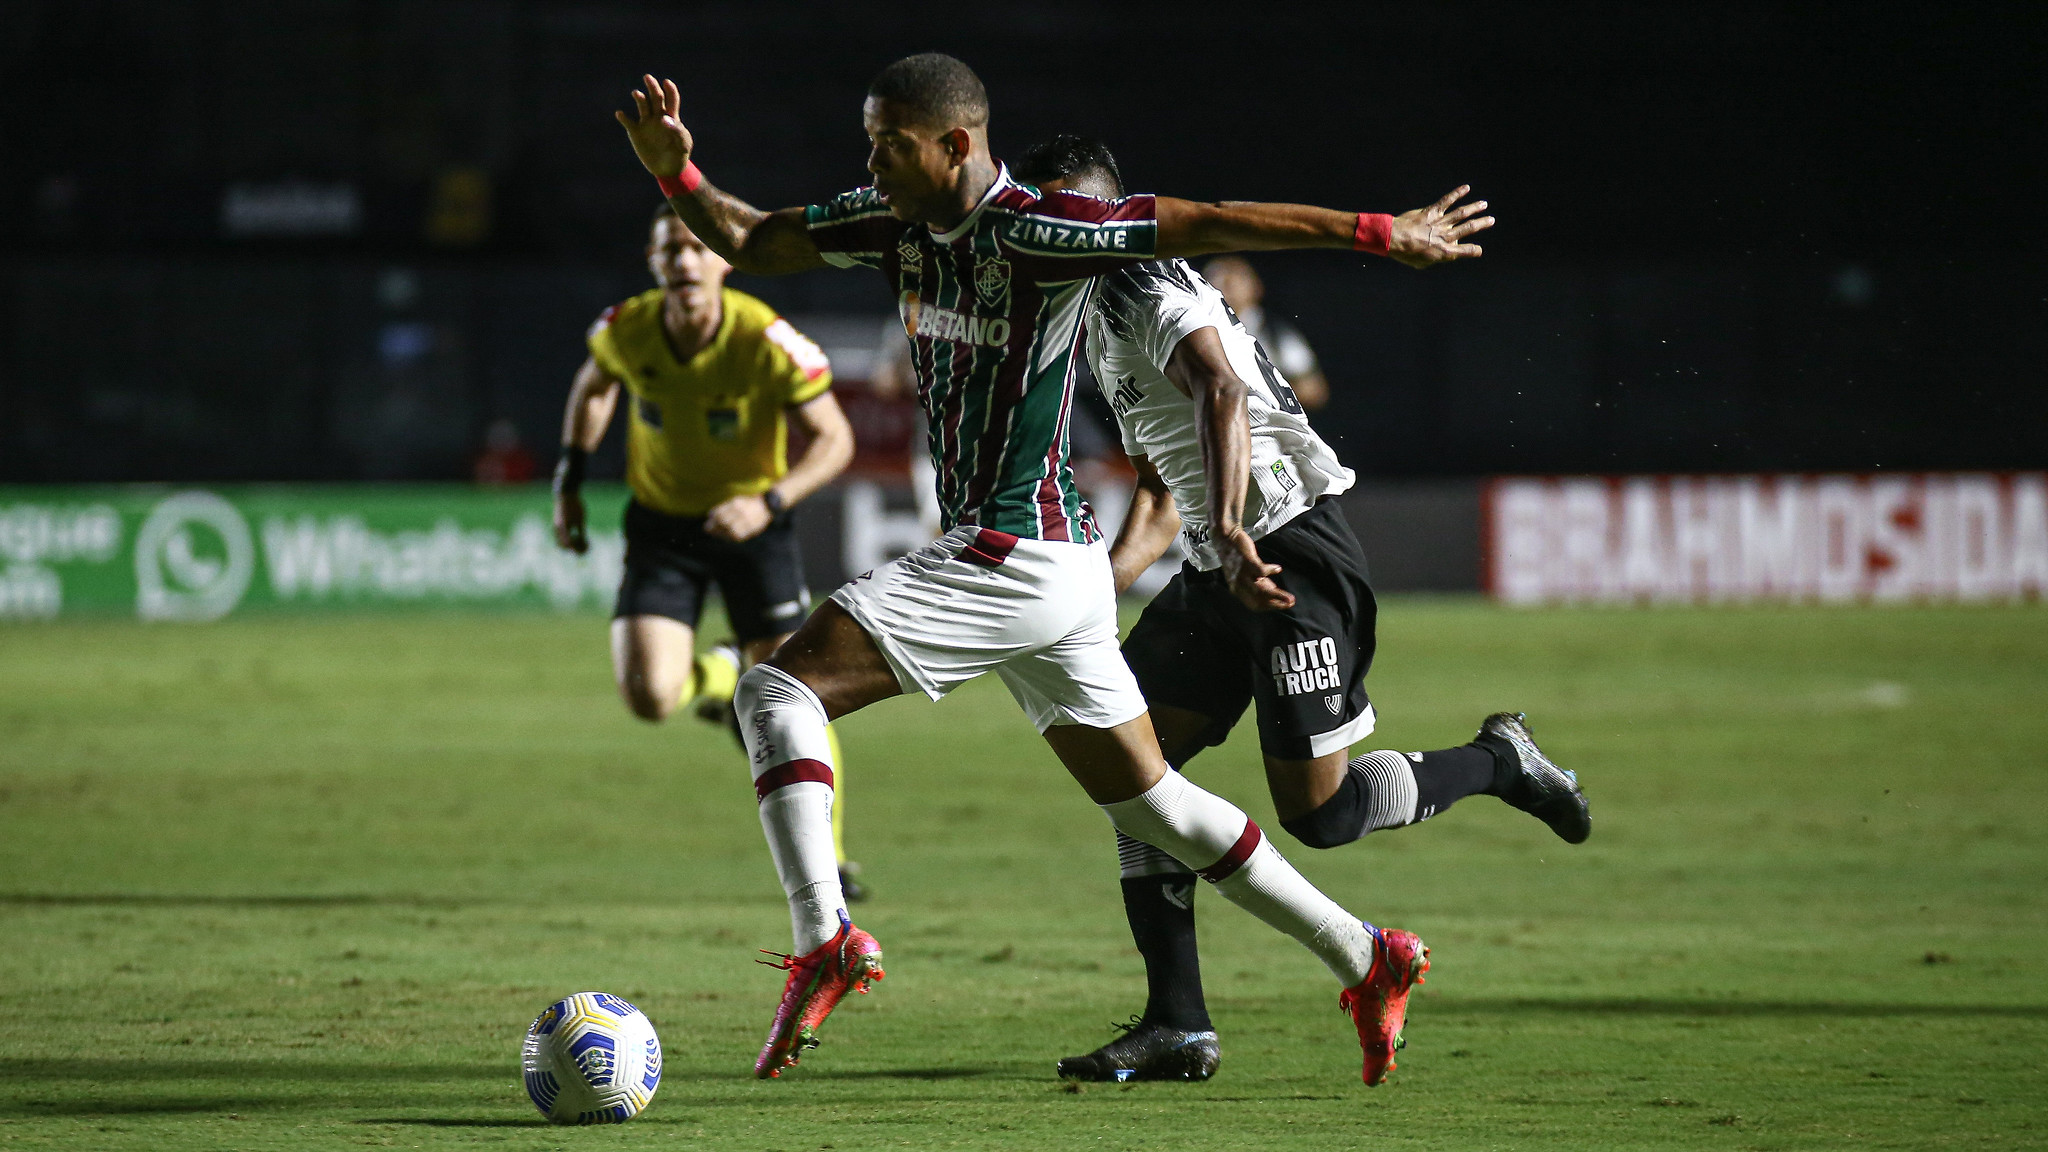 Em ascensão, Caio Paulista brilha pelo Fluminense